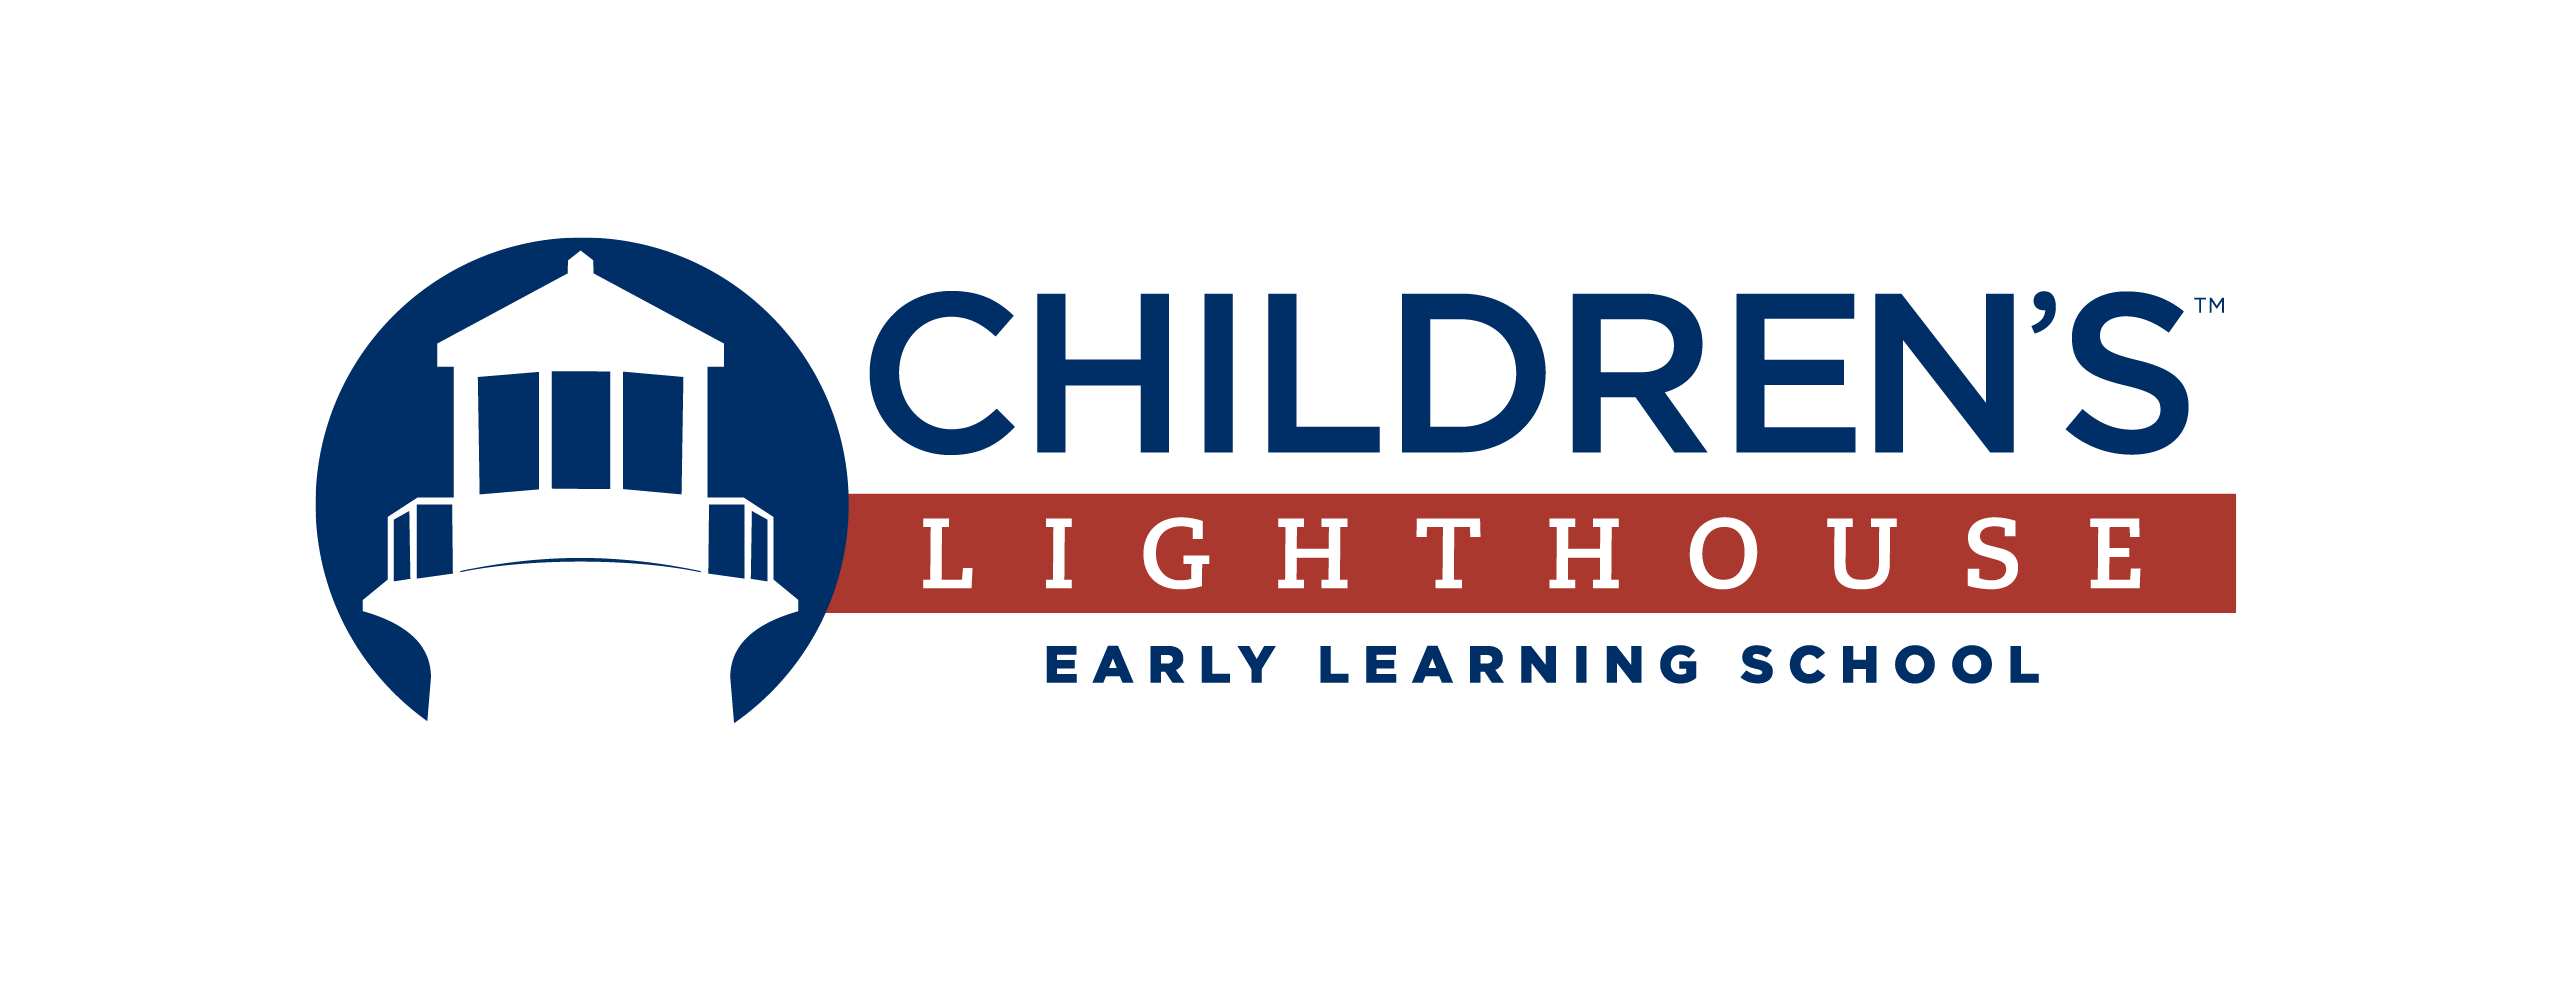 Child Day Care in Rosenberg, TX - Children's Lighthouse